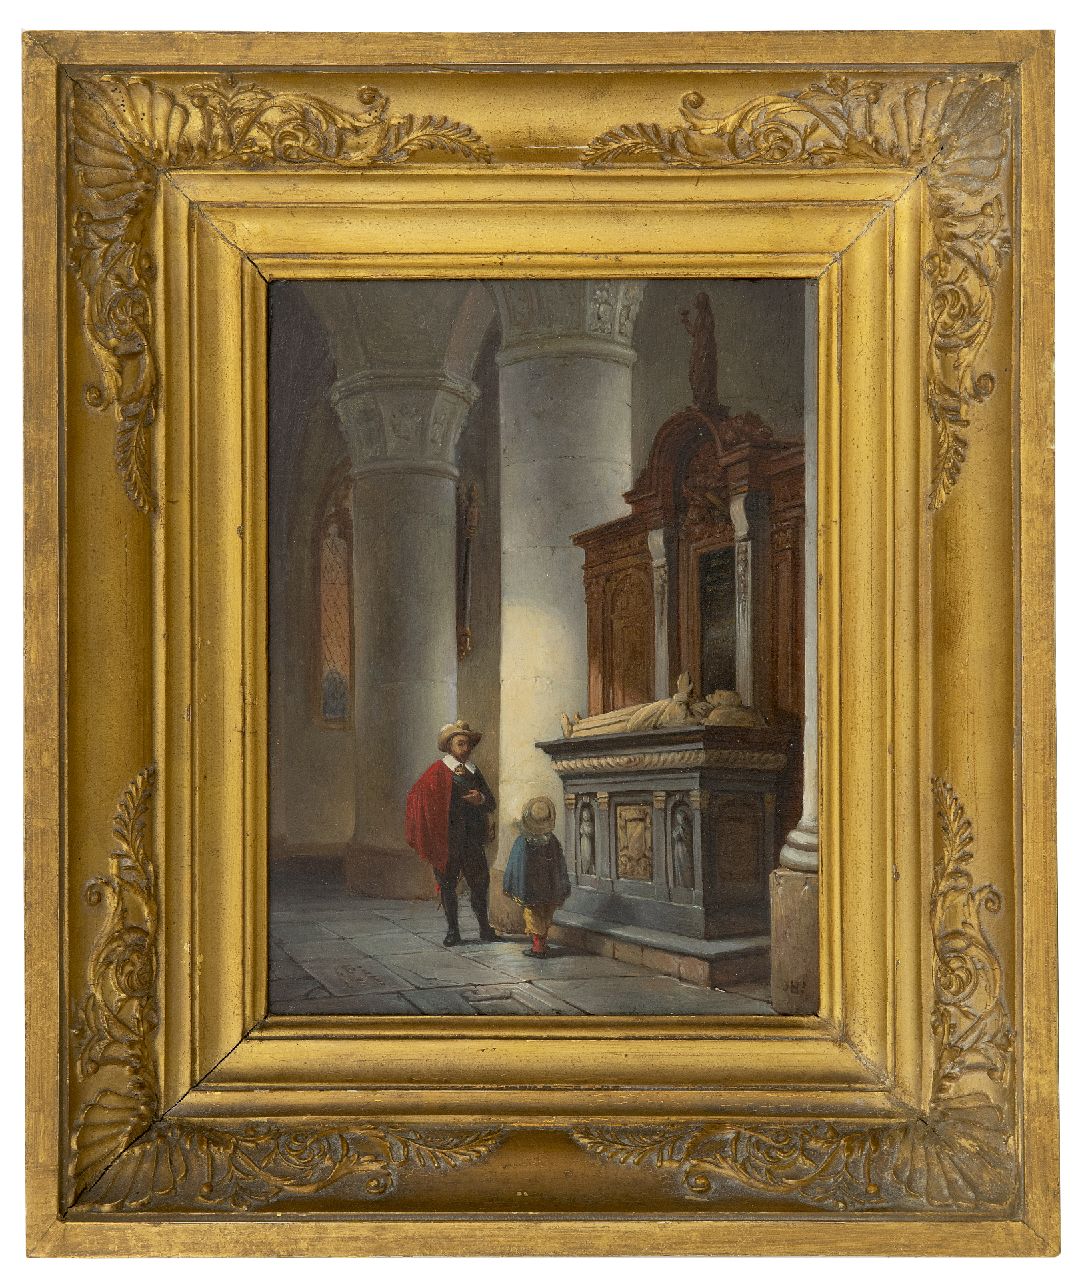 Haanen G.G.  | George Gillis Haanen | Schilderijen te koop aangeboden | Vader en zoon in een kerkinterieur, olieverf op paneel 21,7 x 16,6 cm, gesigneerd rechtsonder met initialen